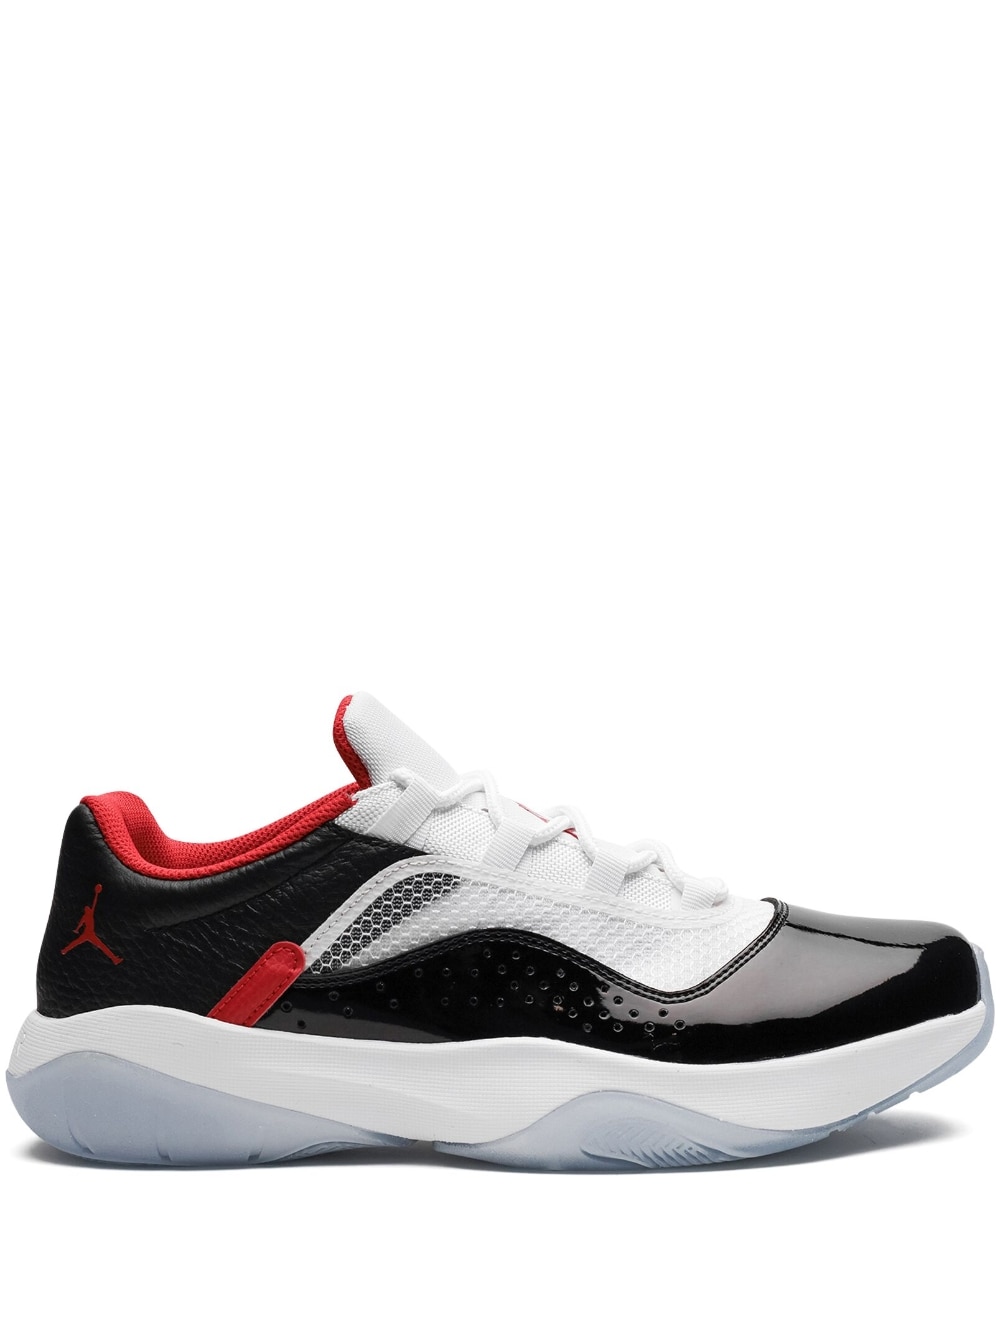 Jordan Air Jordan 11 CMFT Low "USA" sneakers - Black